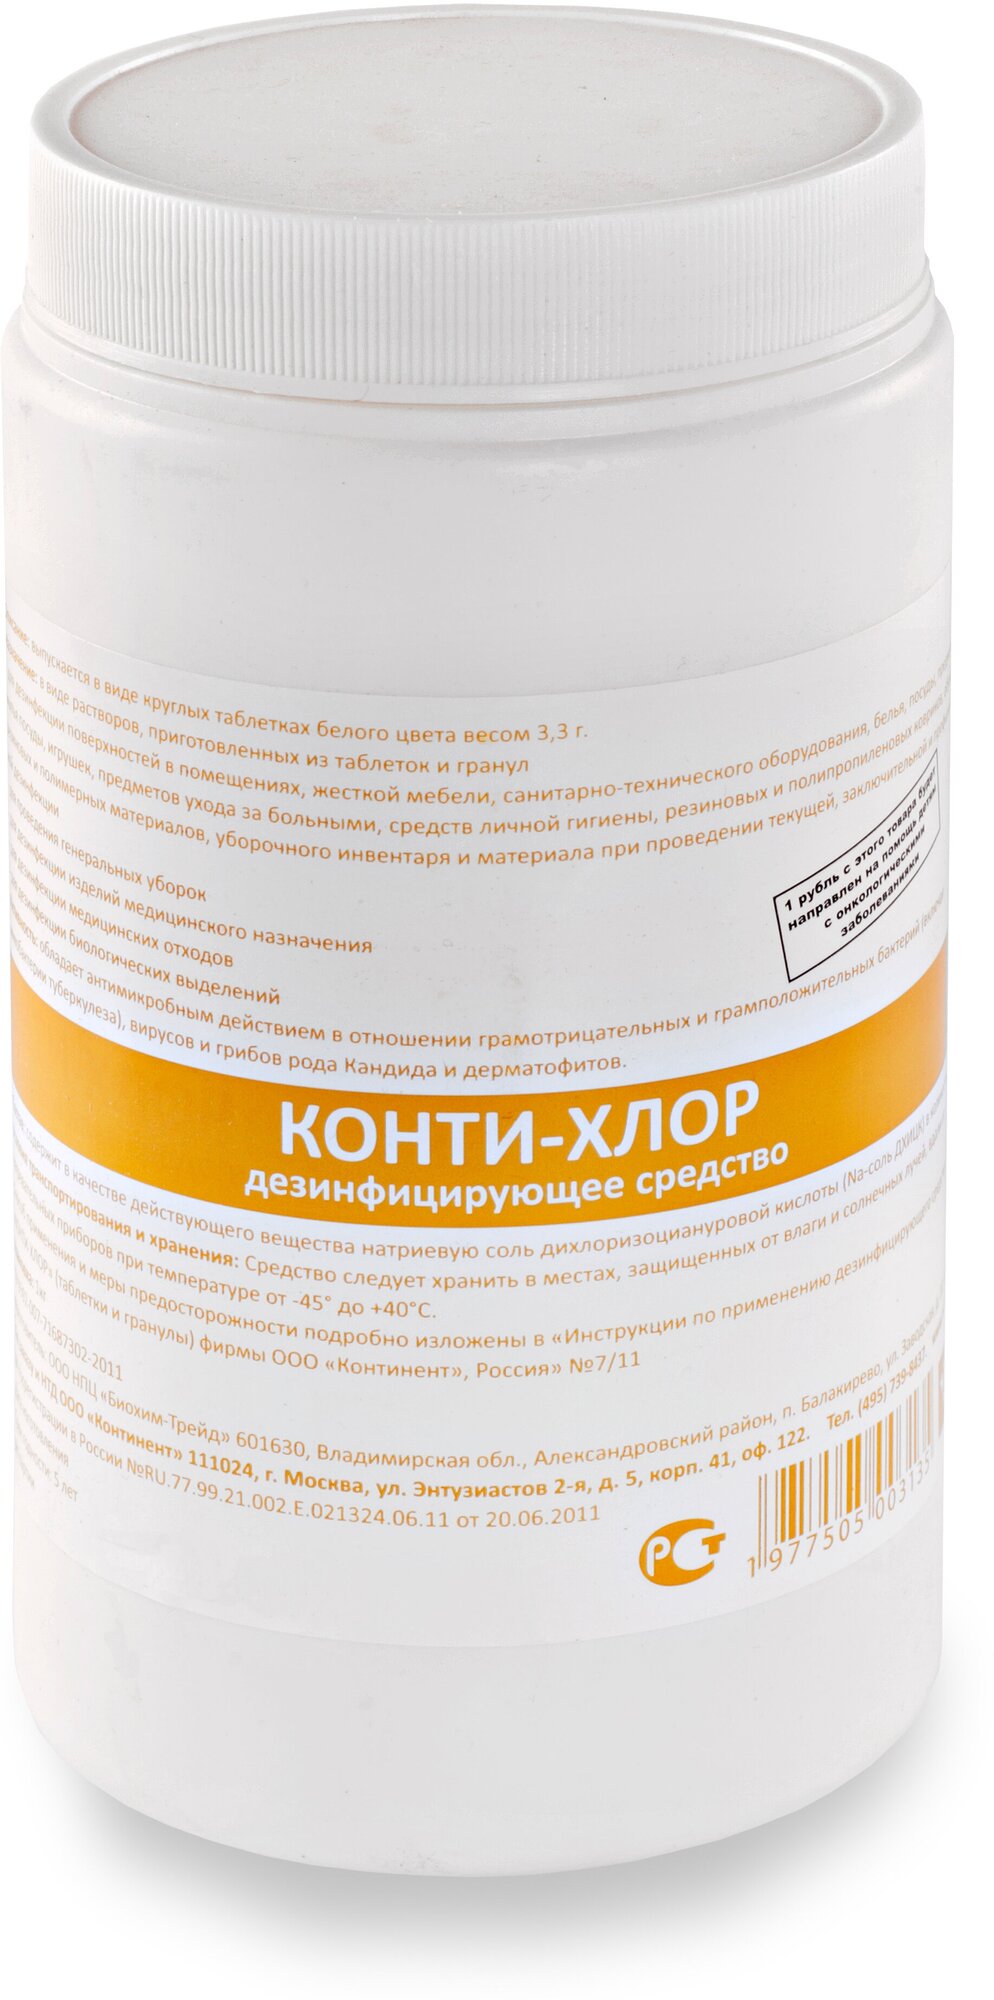 Дезинфицирующее средство Конти-хлор (хлорные таблектки 3.3г) 1кг в таблетках